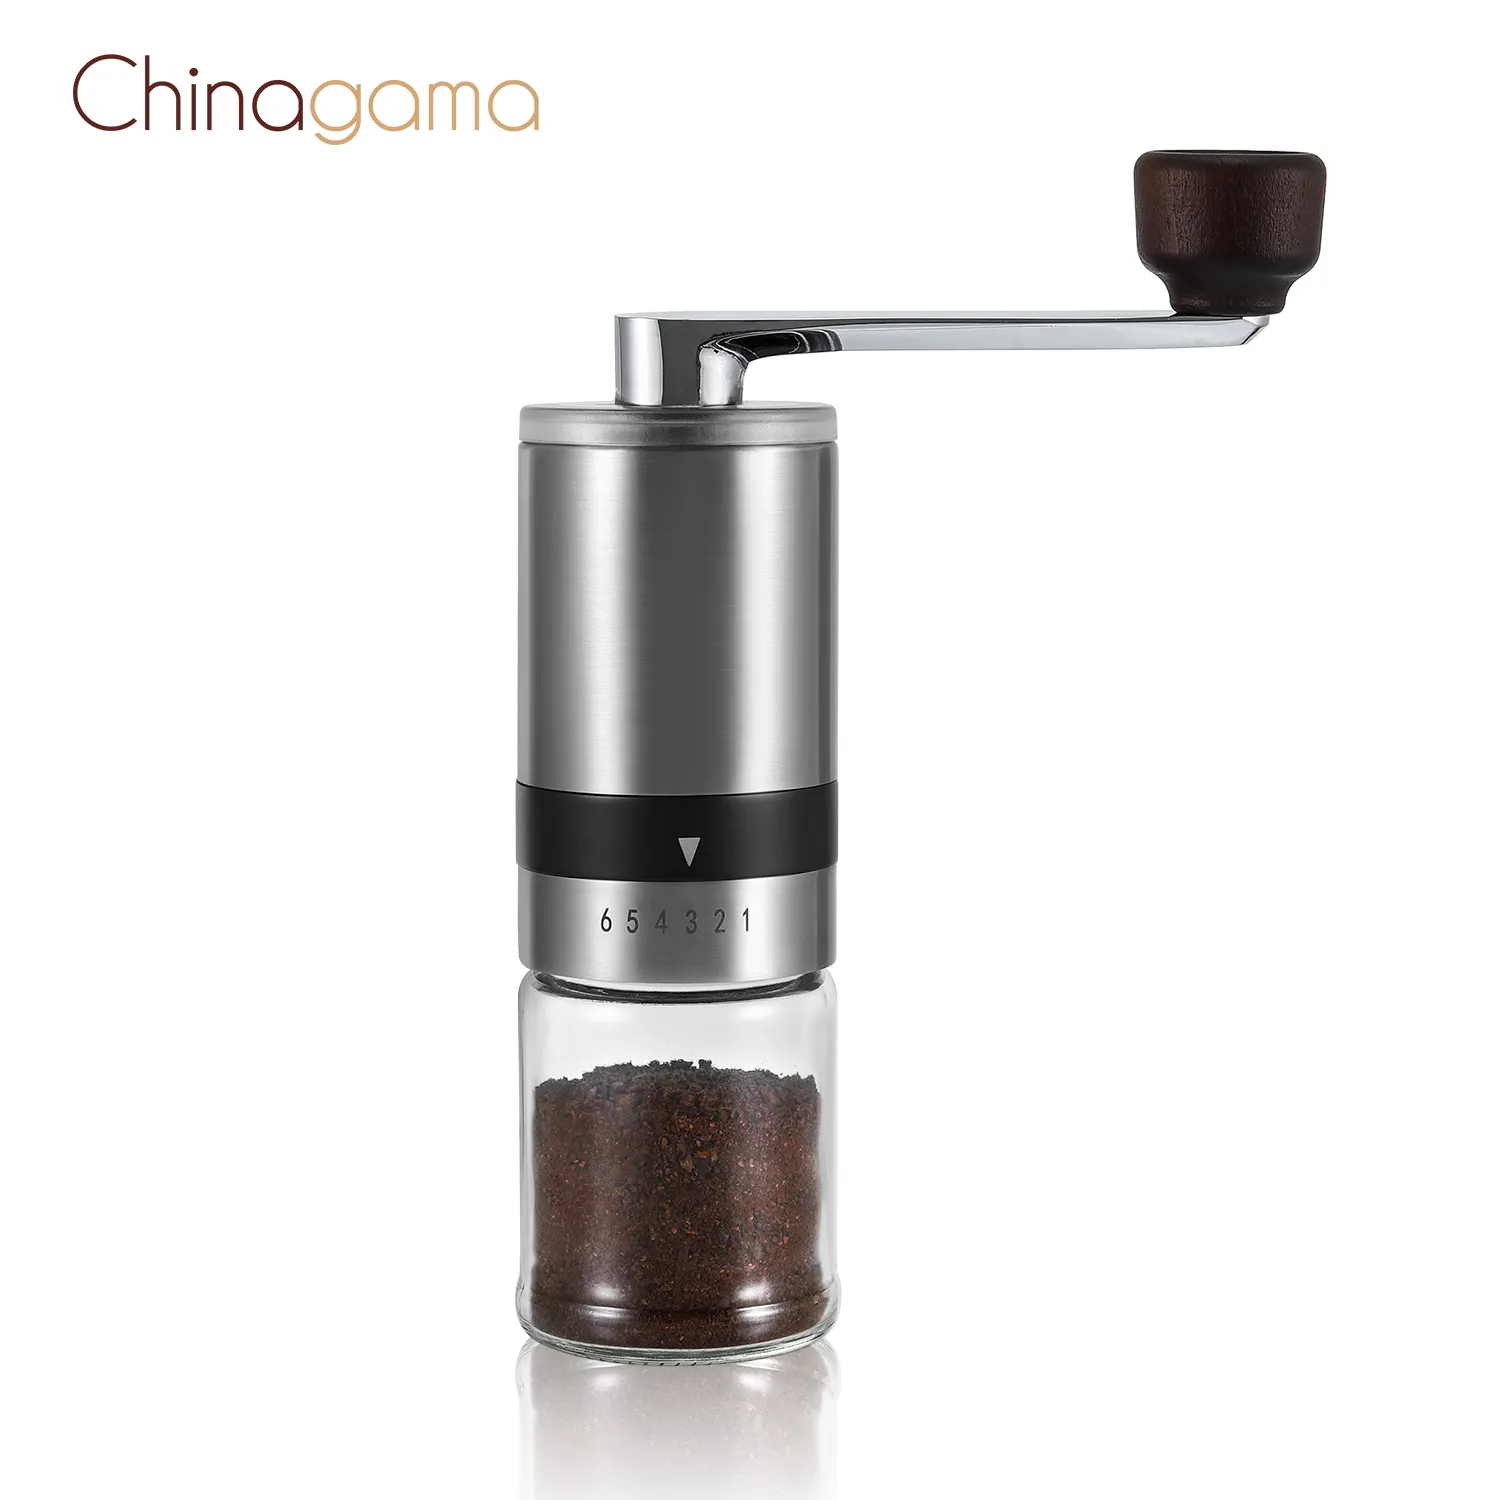 Commercio all'ingrosso di disegno cafe caffè strumenti di mini portatile in acciaio inox corpo bave di ceramica a mano regolabile manuale mulino macina caffè